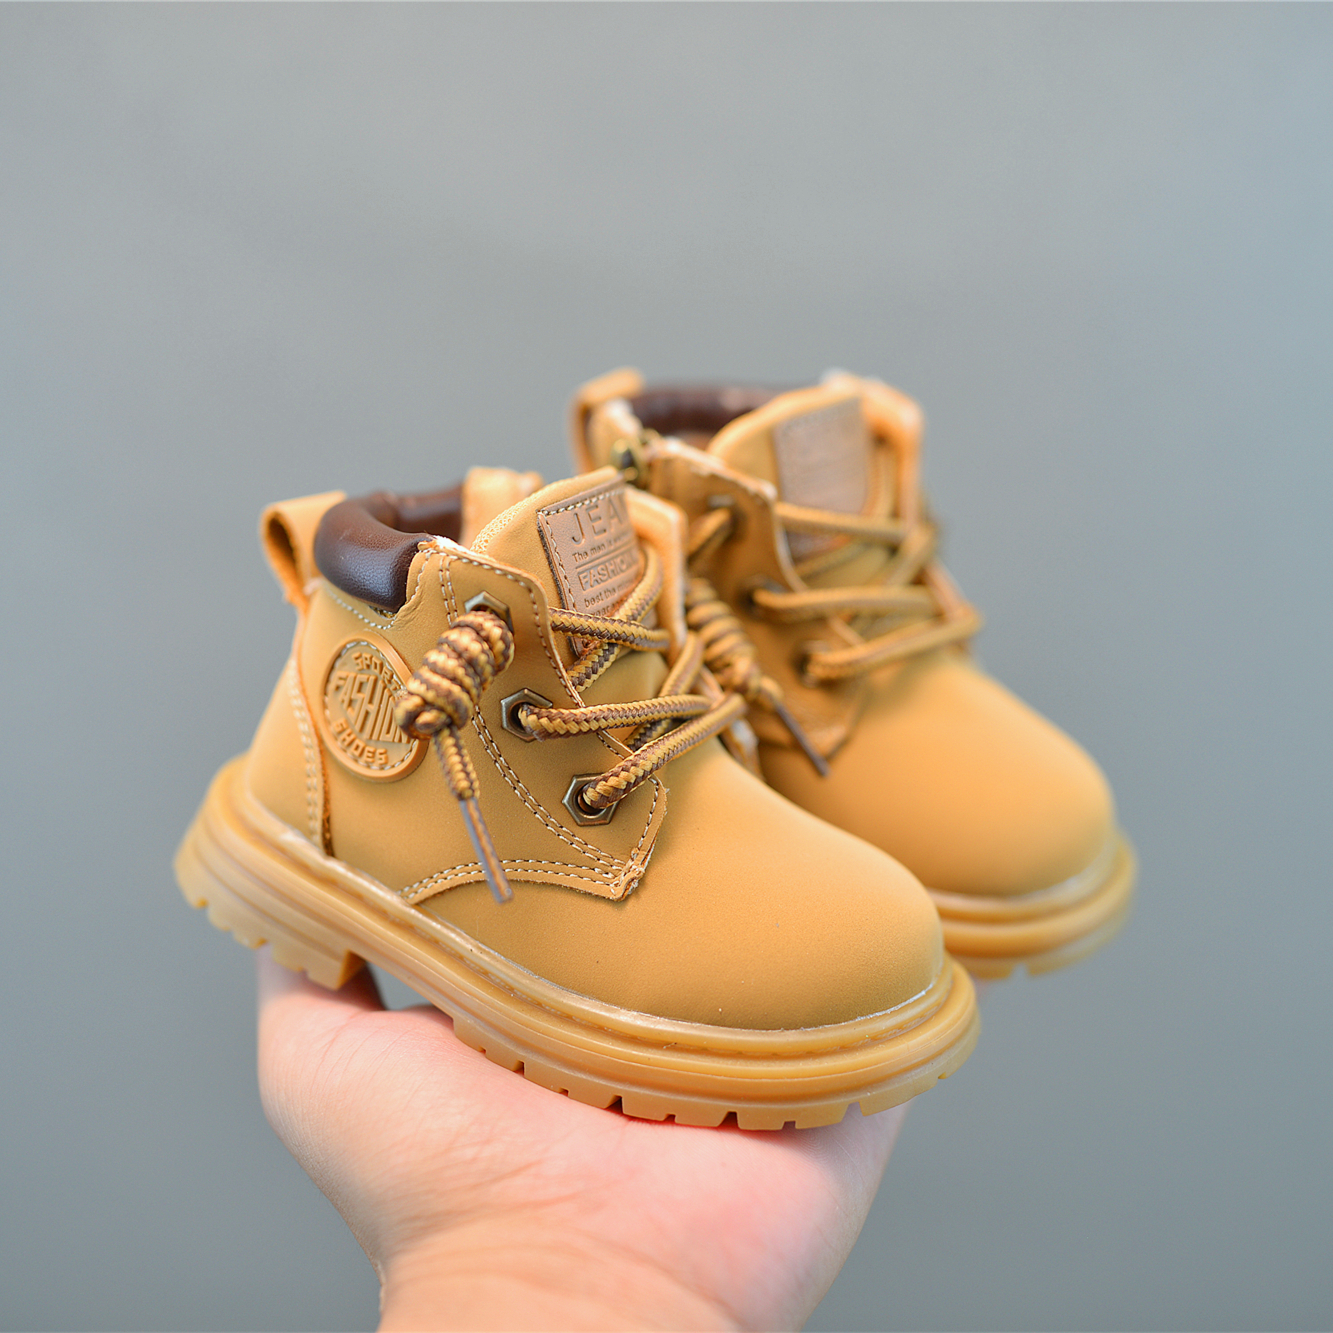 儿童马丁靴软底男宝宝学步鞋秋季新款女童婴儿鞋子一岁休闲小黄鞋